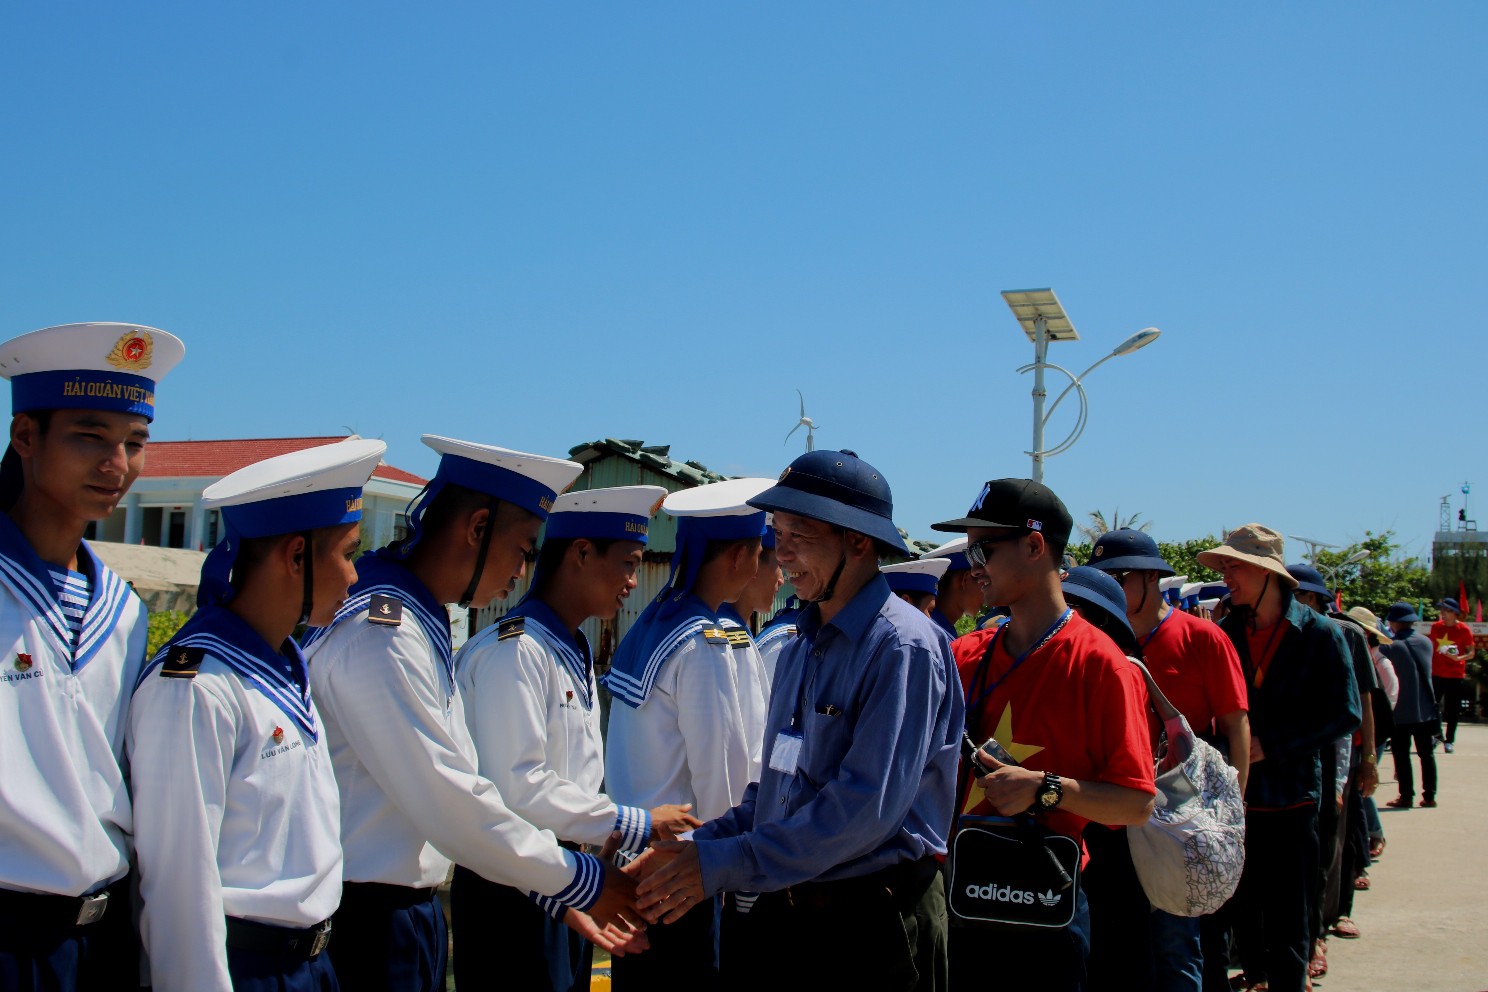 Đặc biệt lễ chào cờ ở Trường Sa của Việt kiều từ khắp nơi trên thế giới - Ảnh 4.